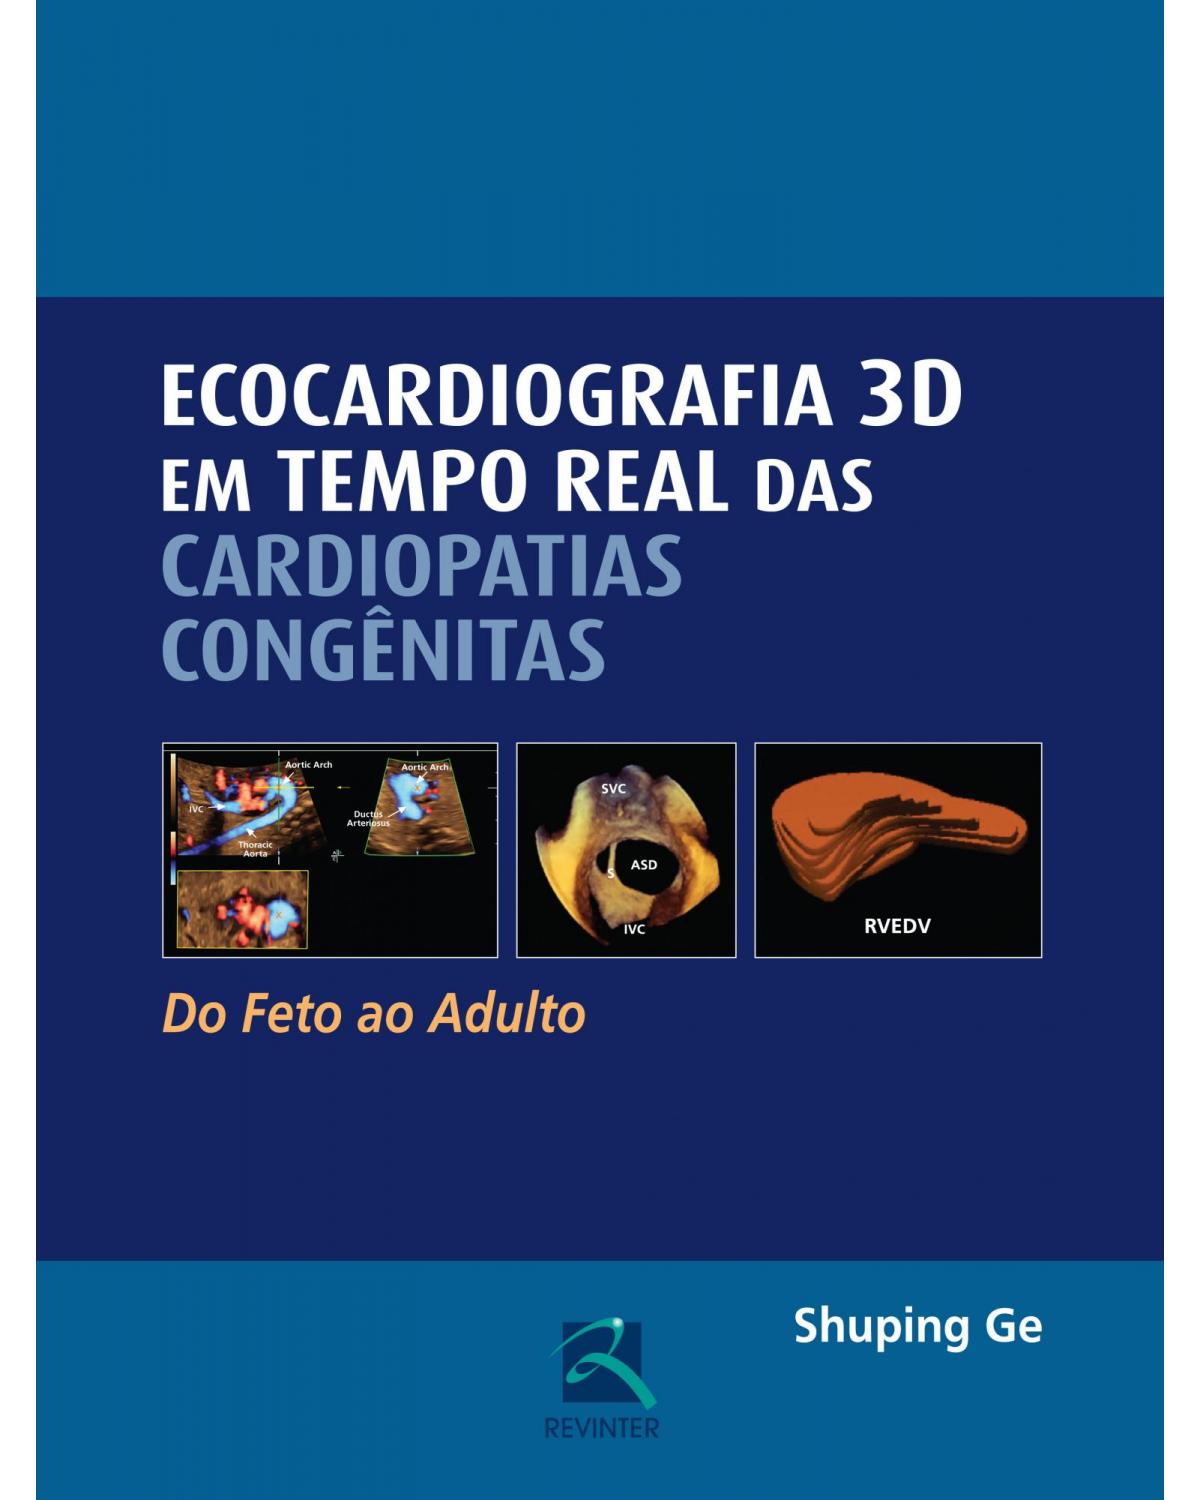 Ecocardiografia 3D em tempo real das cardiopatias congênitas - do feto ao adulto - 1ª Edição | 2016